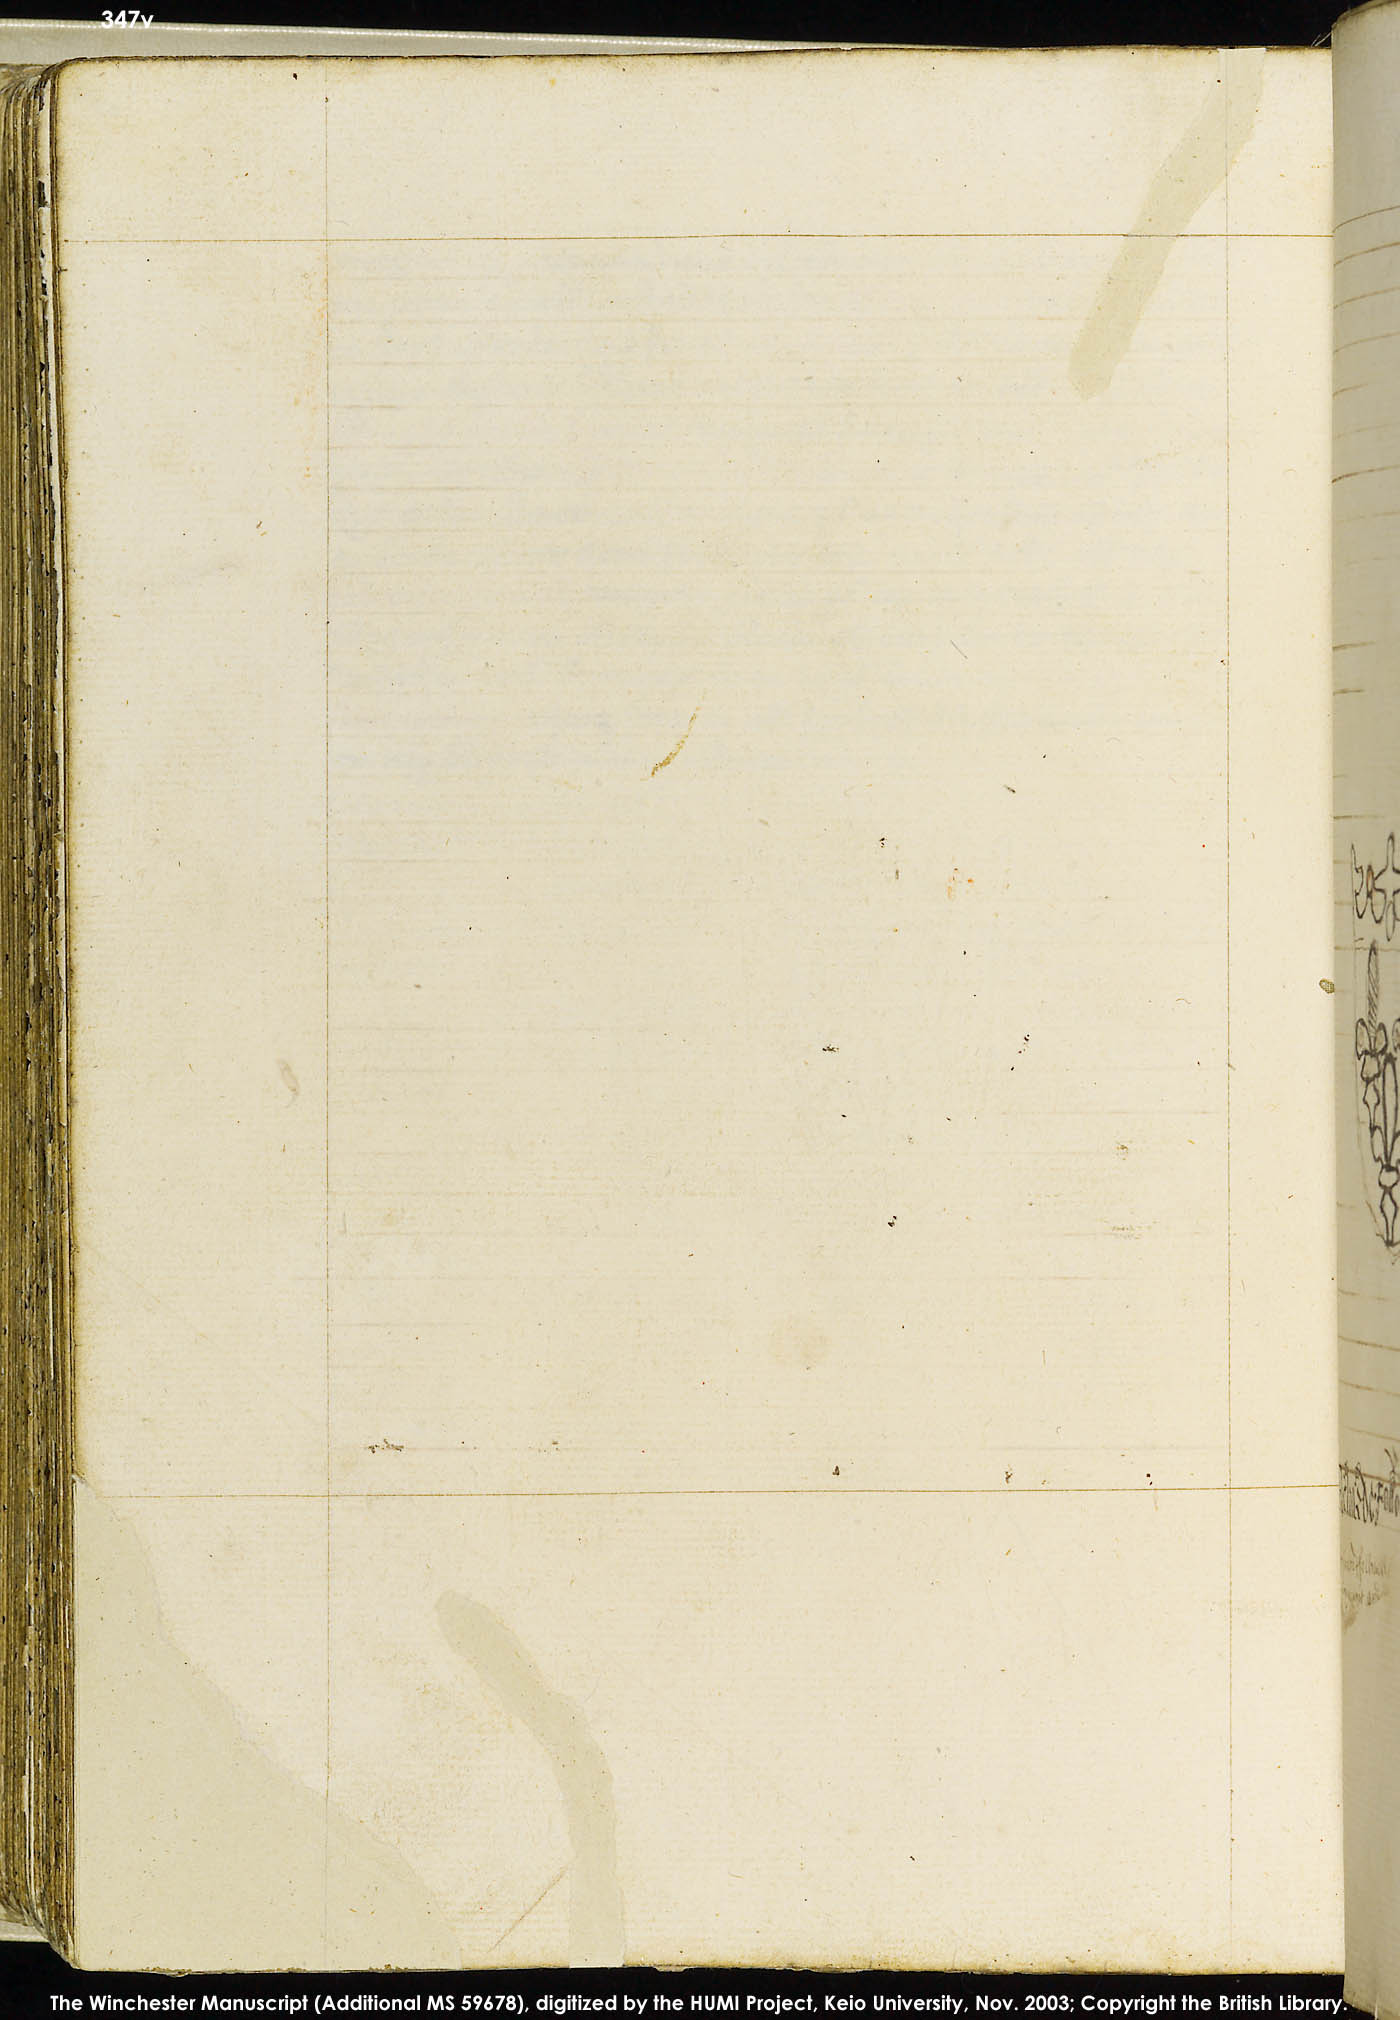 Folio 347v